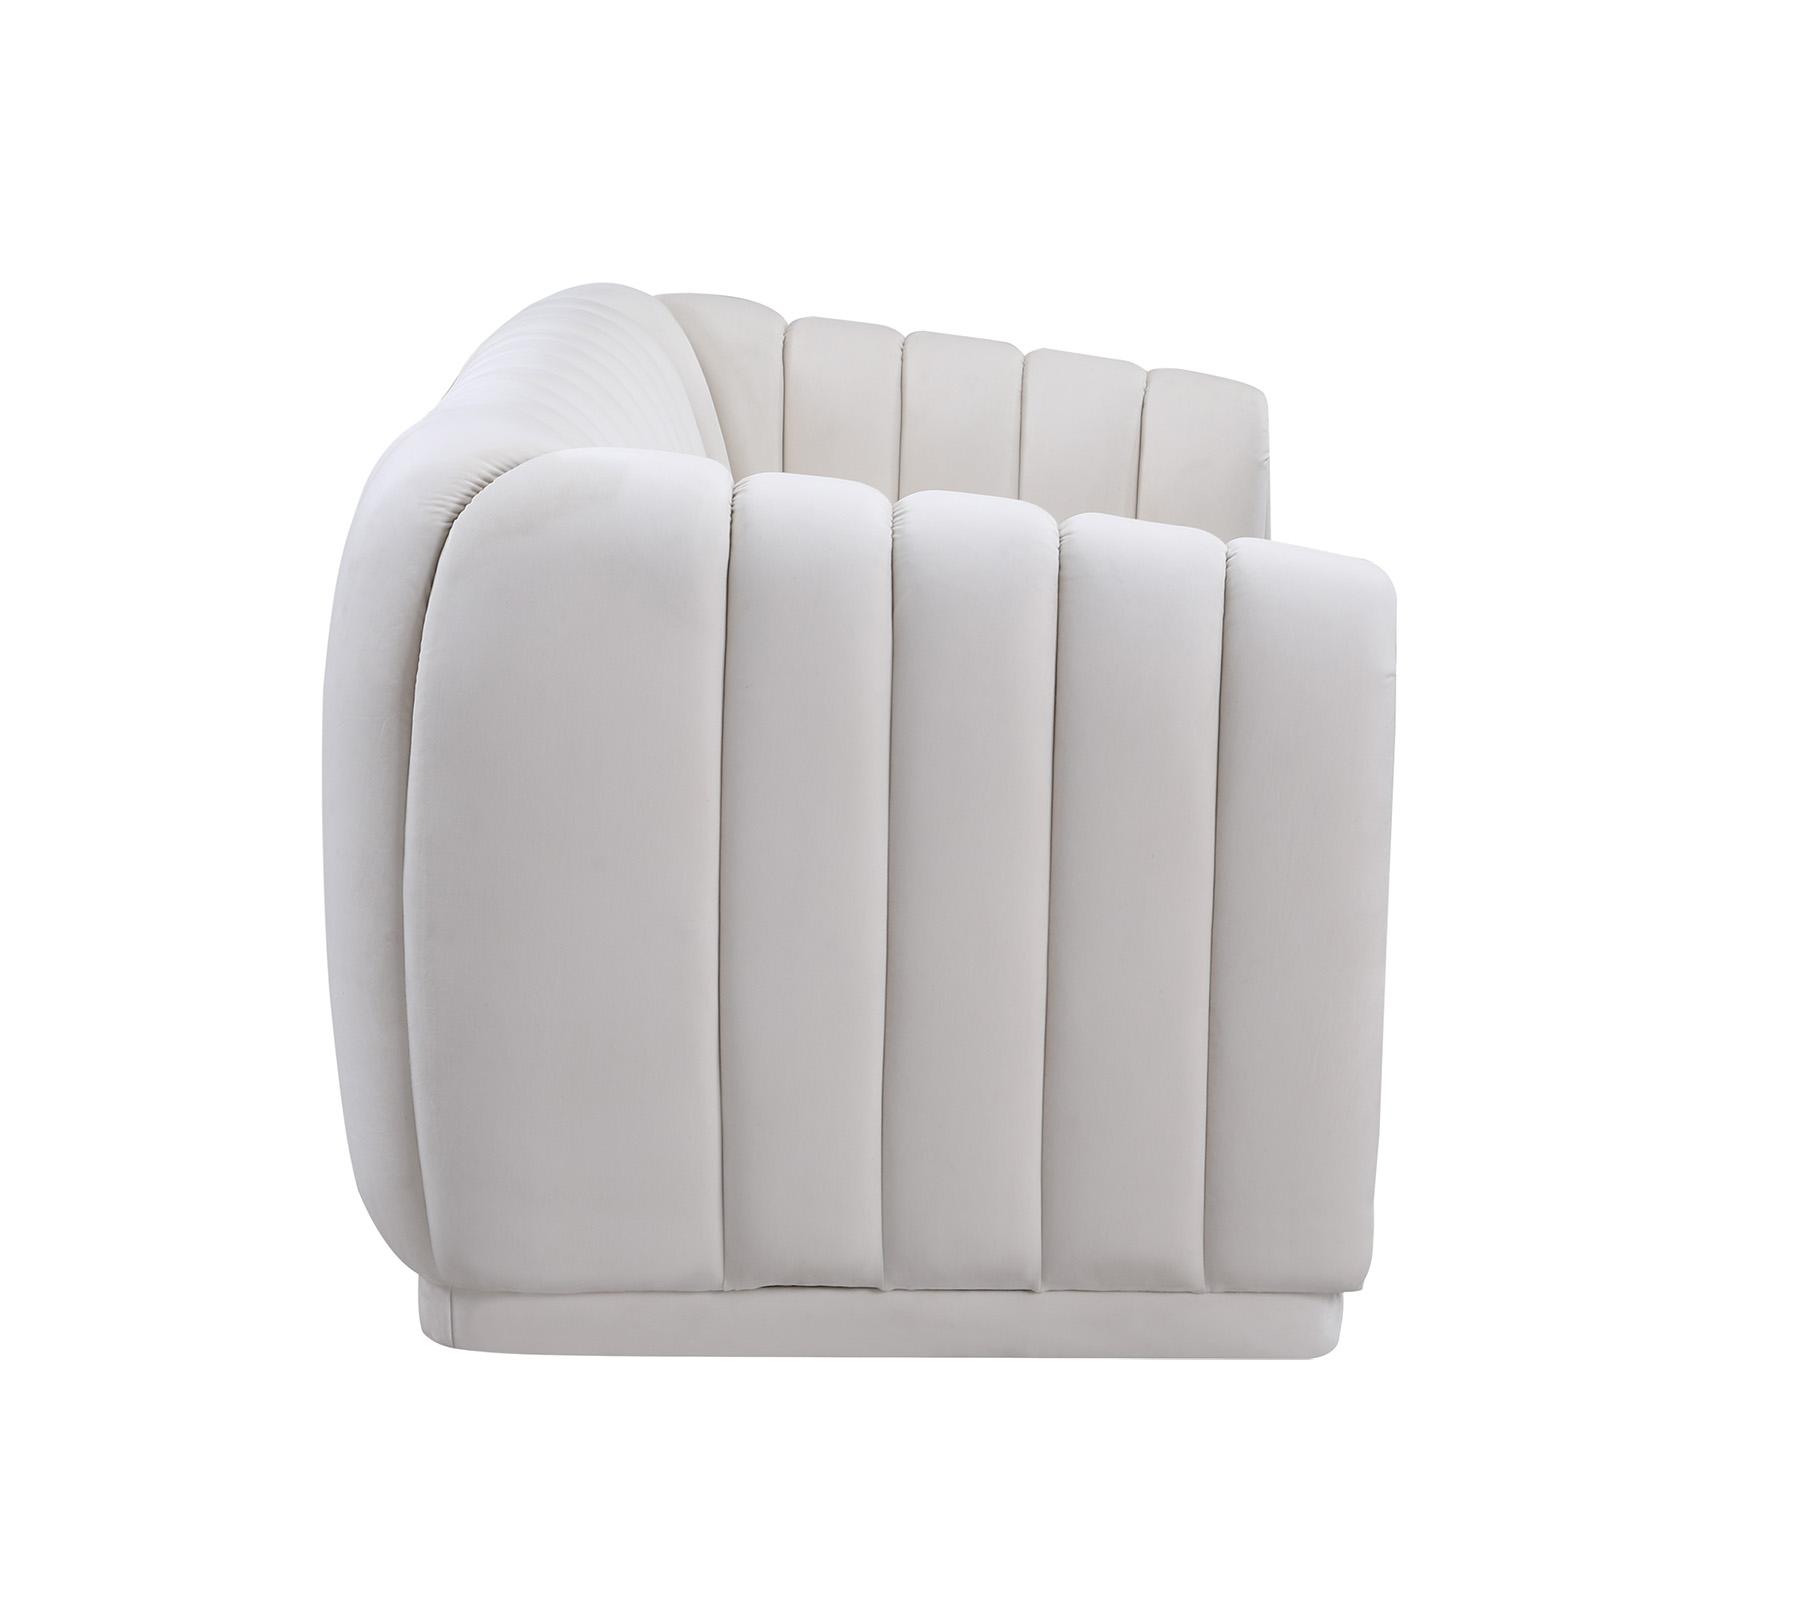 

    
674Cream-C-Set-2 Cream Velvet Tufted Chair Set 2Pcs DIXIE 674Cream-C Meridian Contemporary Modern
